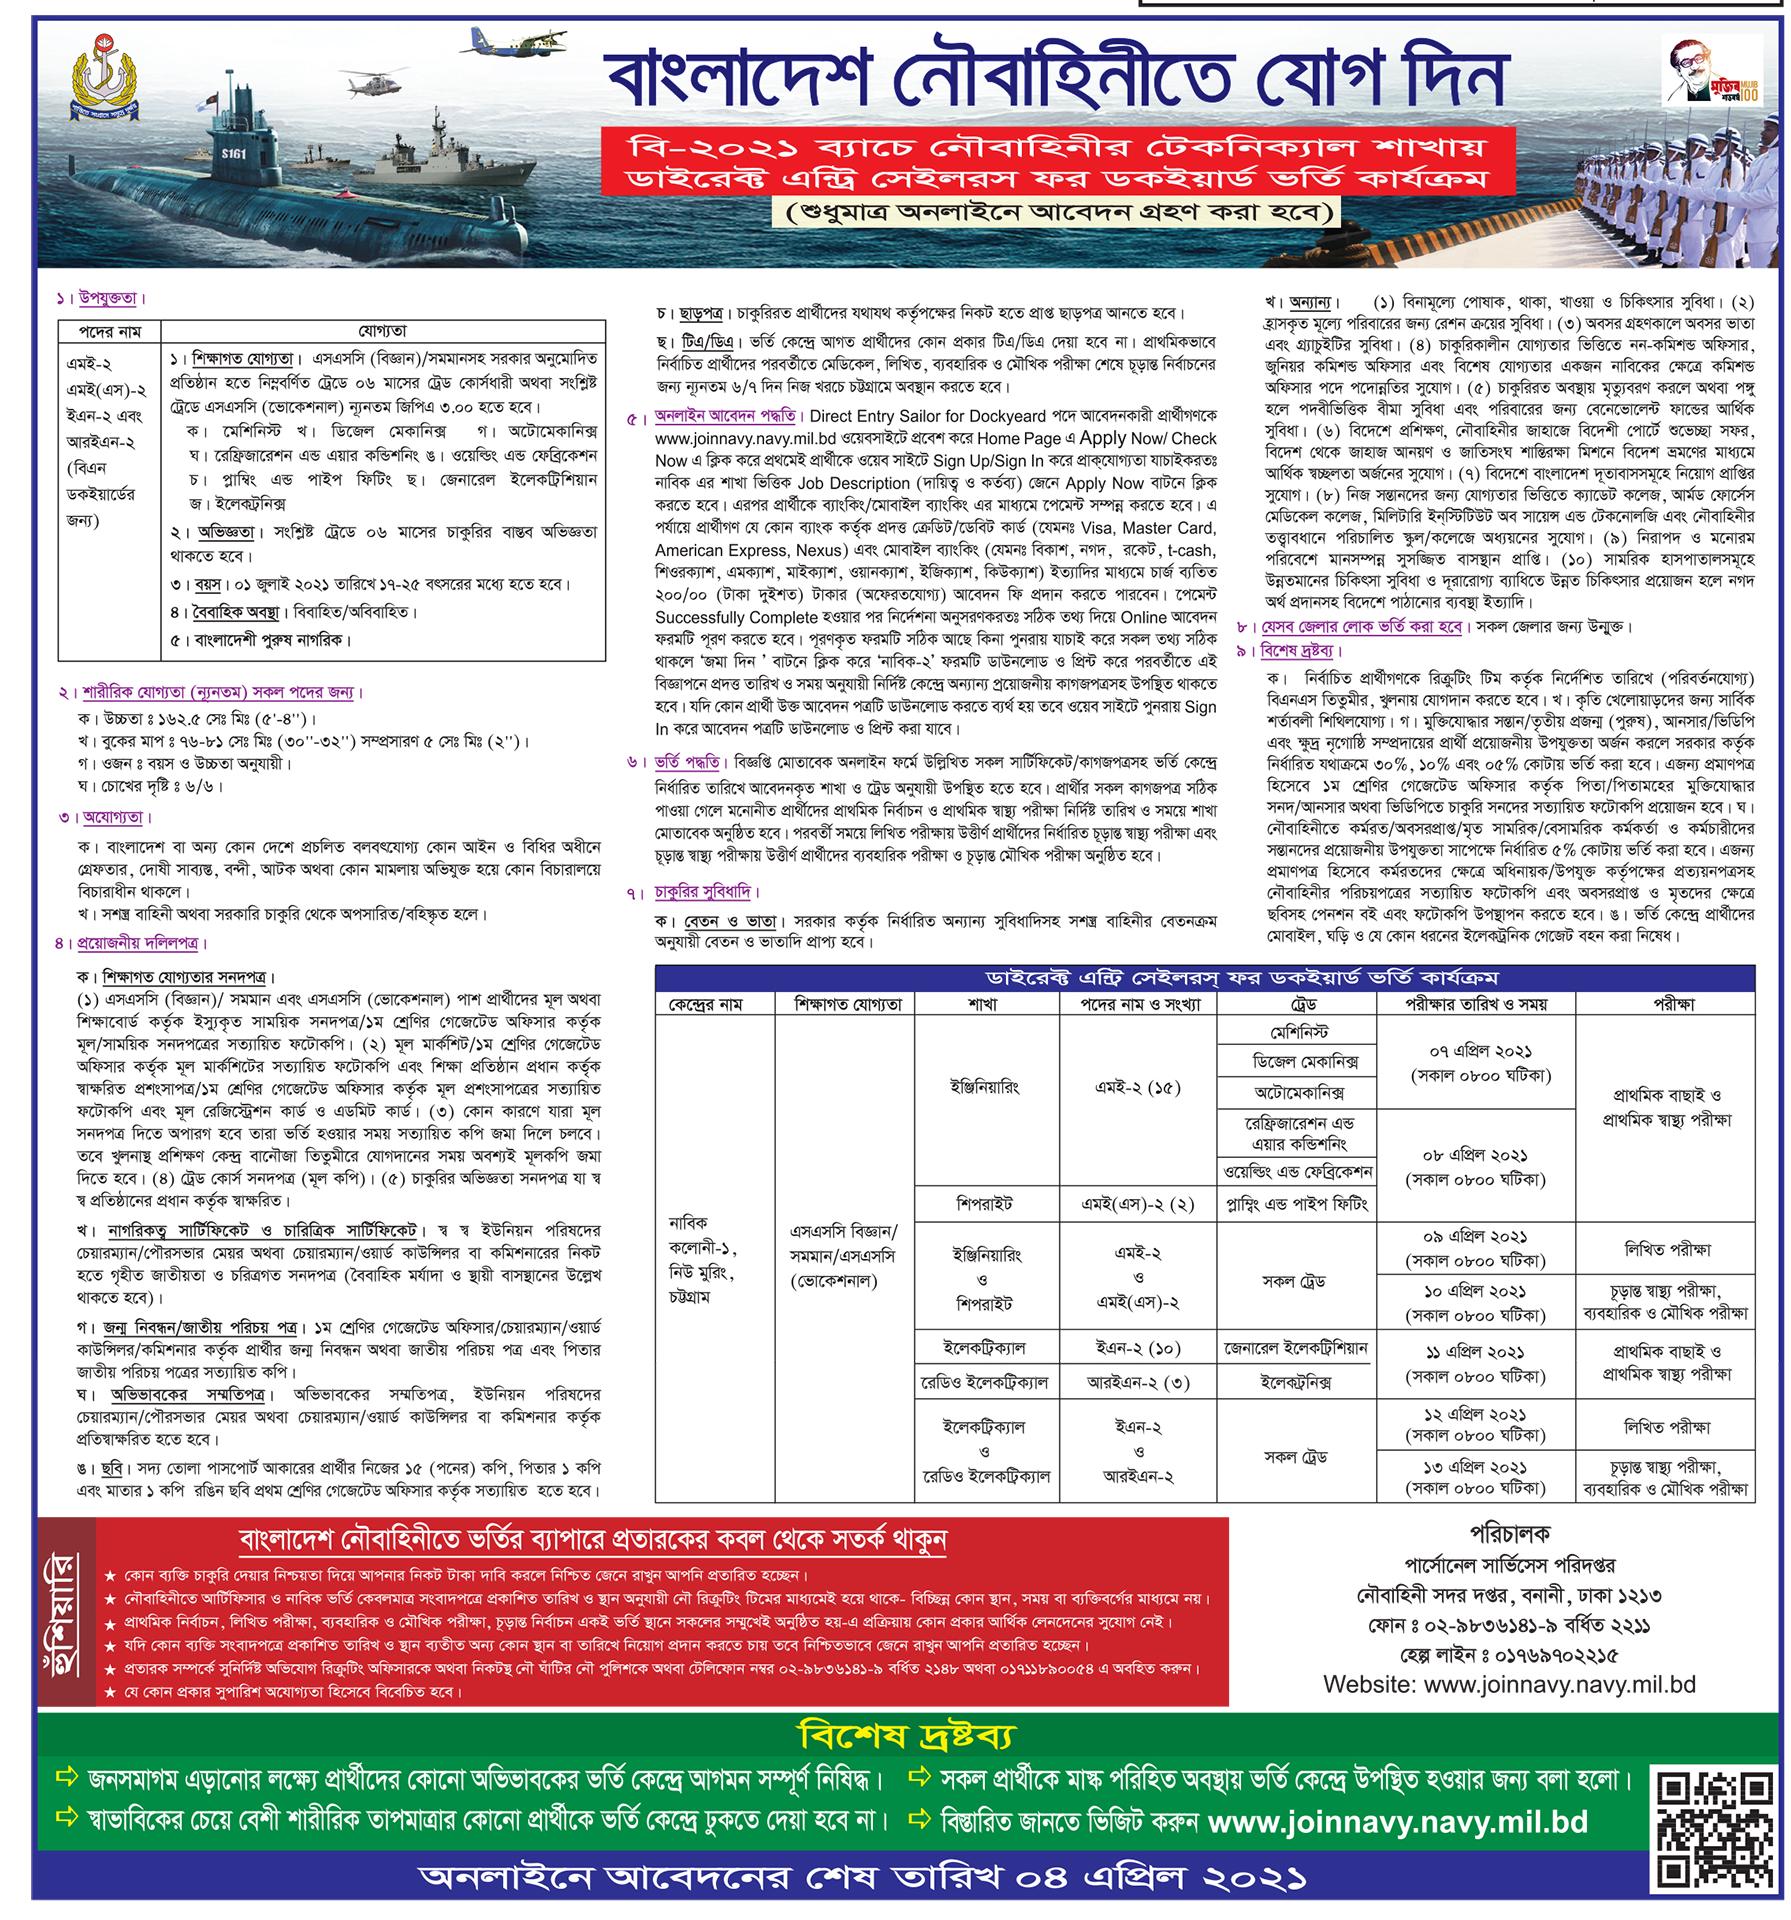 Bangladesh navy Circular 2021 - বাংলাদেশ নৌবাহিনী নিয়োগ ২০২১ সার্কুলার - বাংলাদেশ নৌবাহিনী সৈনিক পদে নিয়োগ ২০২১